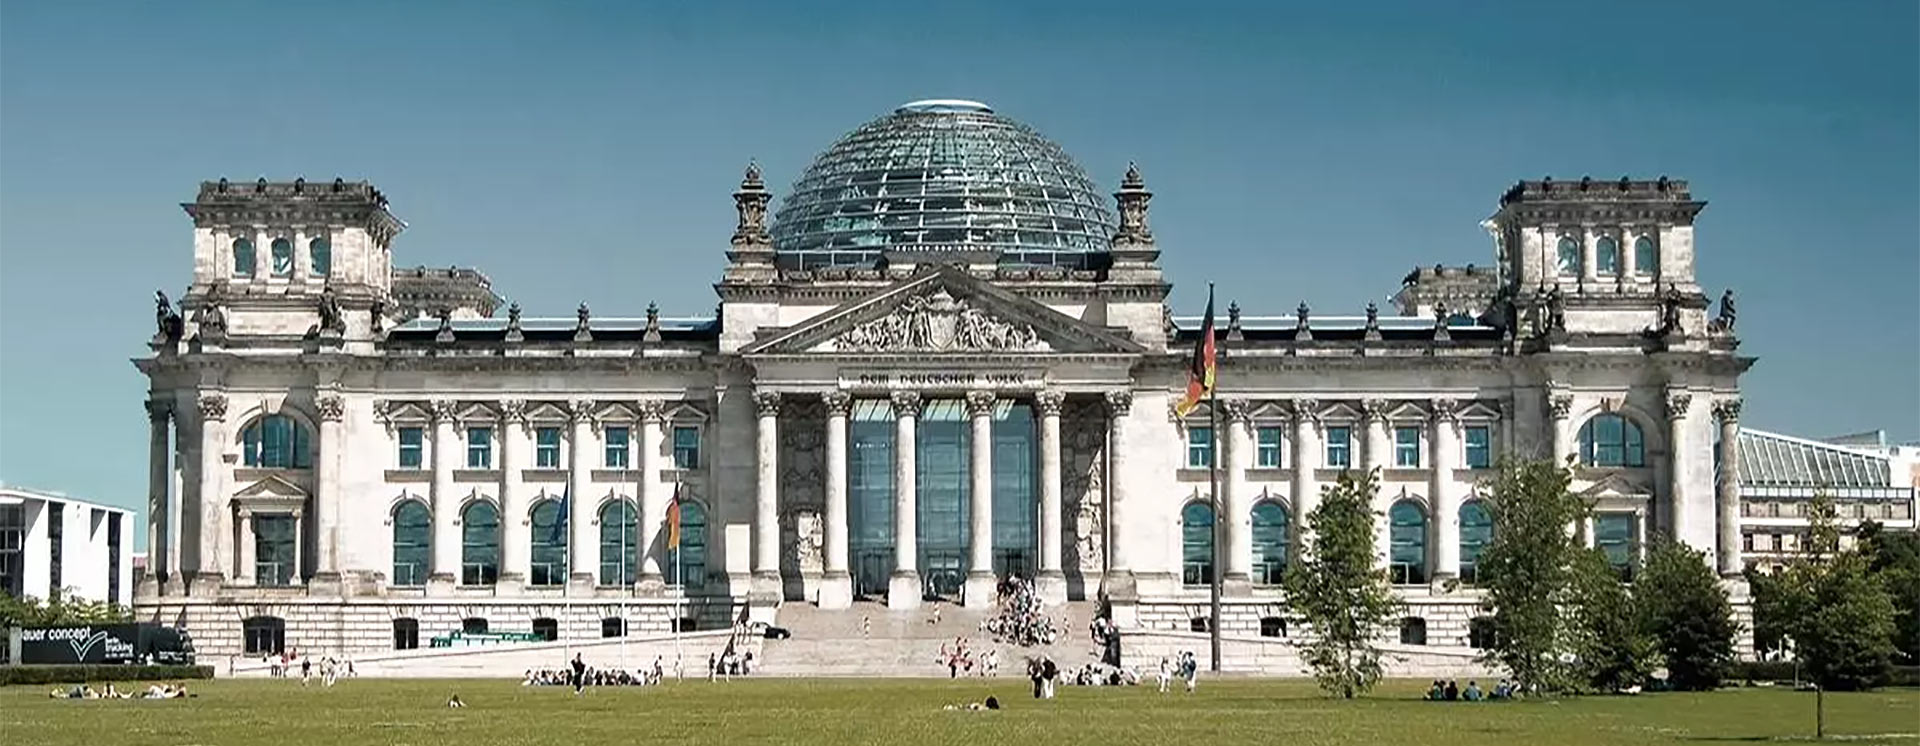 Innovatives Silatec Glas für den Reichstag in Berlin